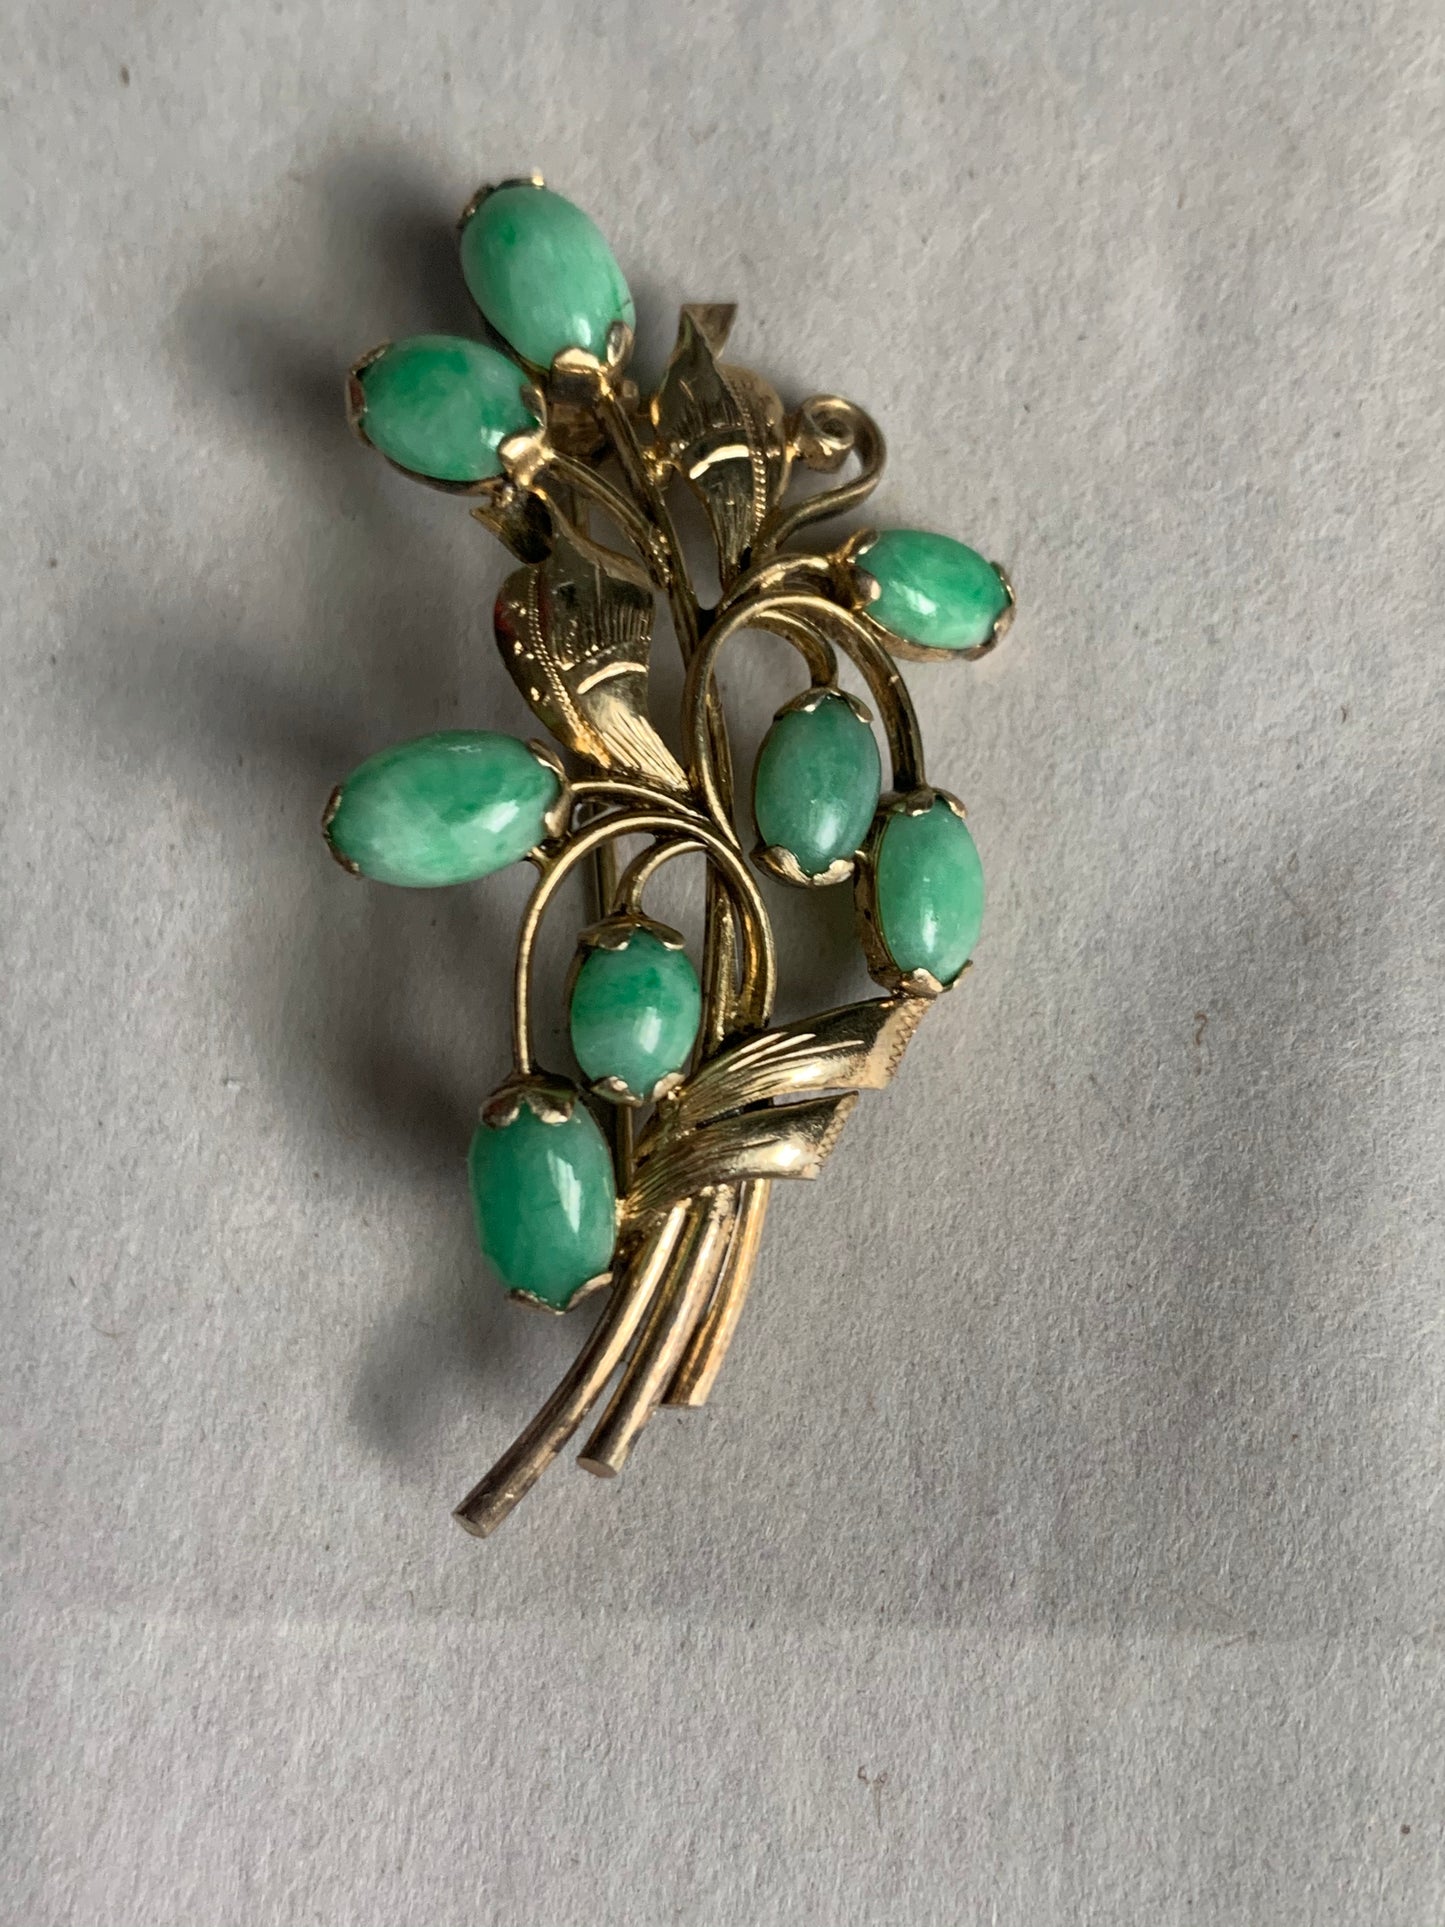 A jade brooch